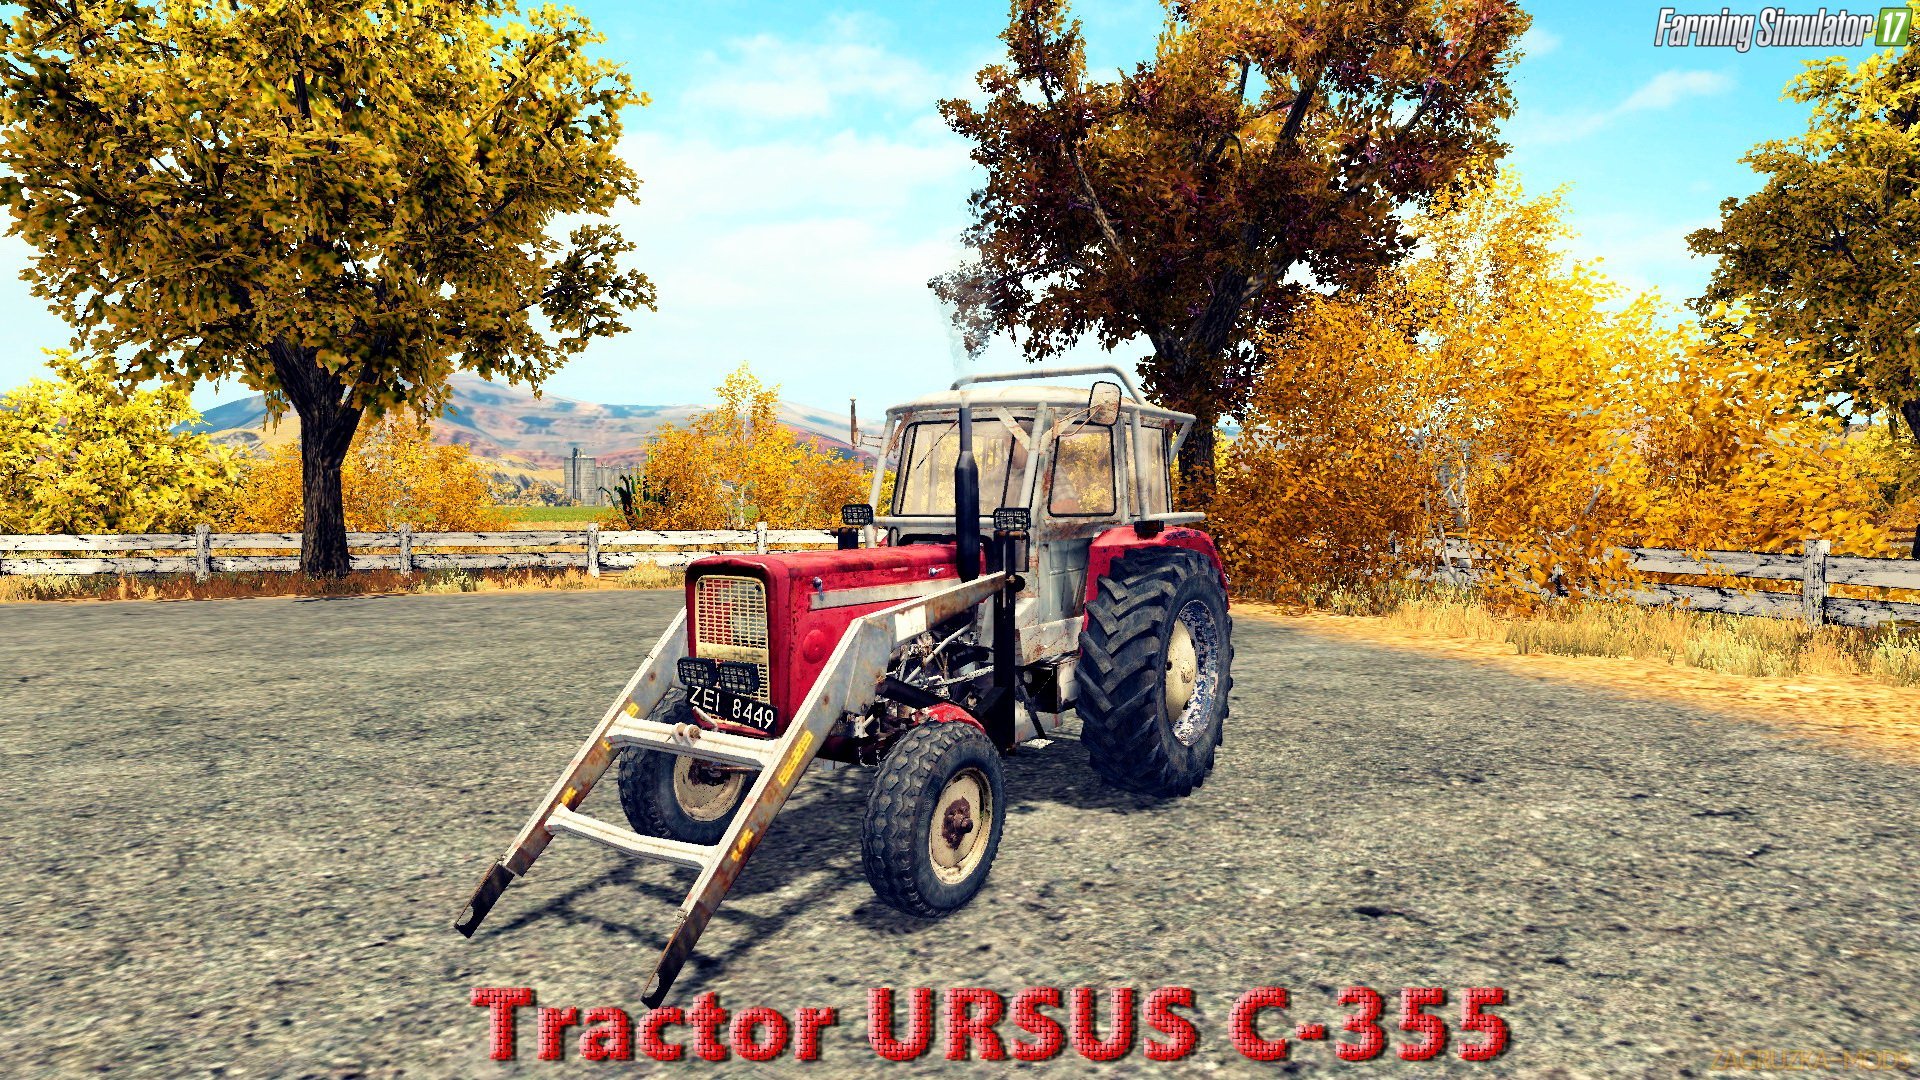 URSUS C-355 v1.0 for FS 17